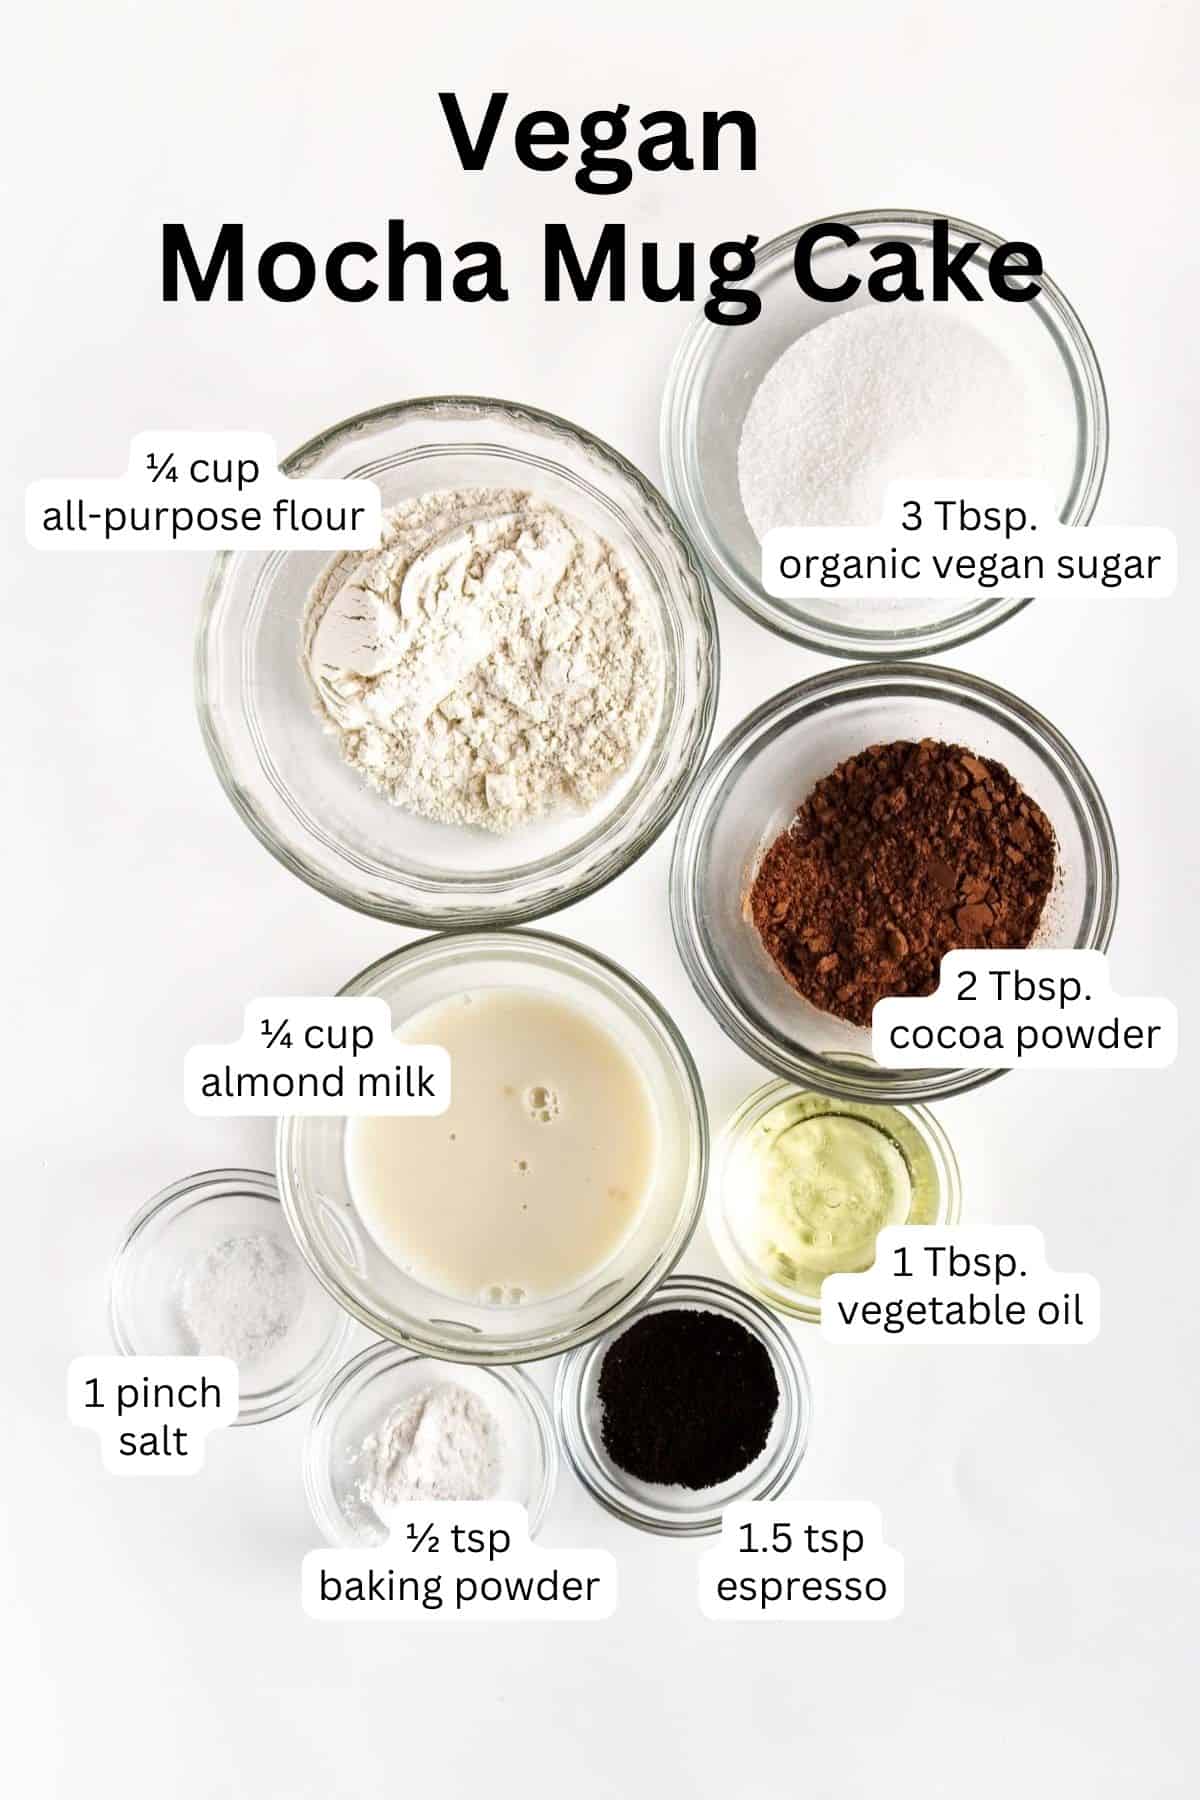 Ingredients to make a vegan mocha mug cake